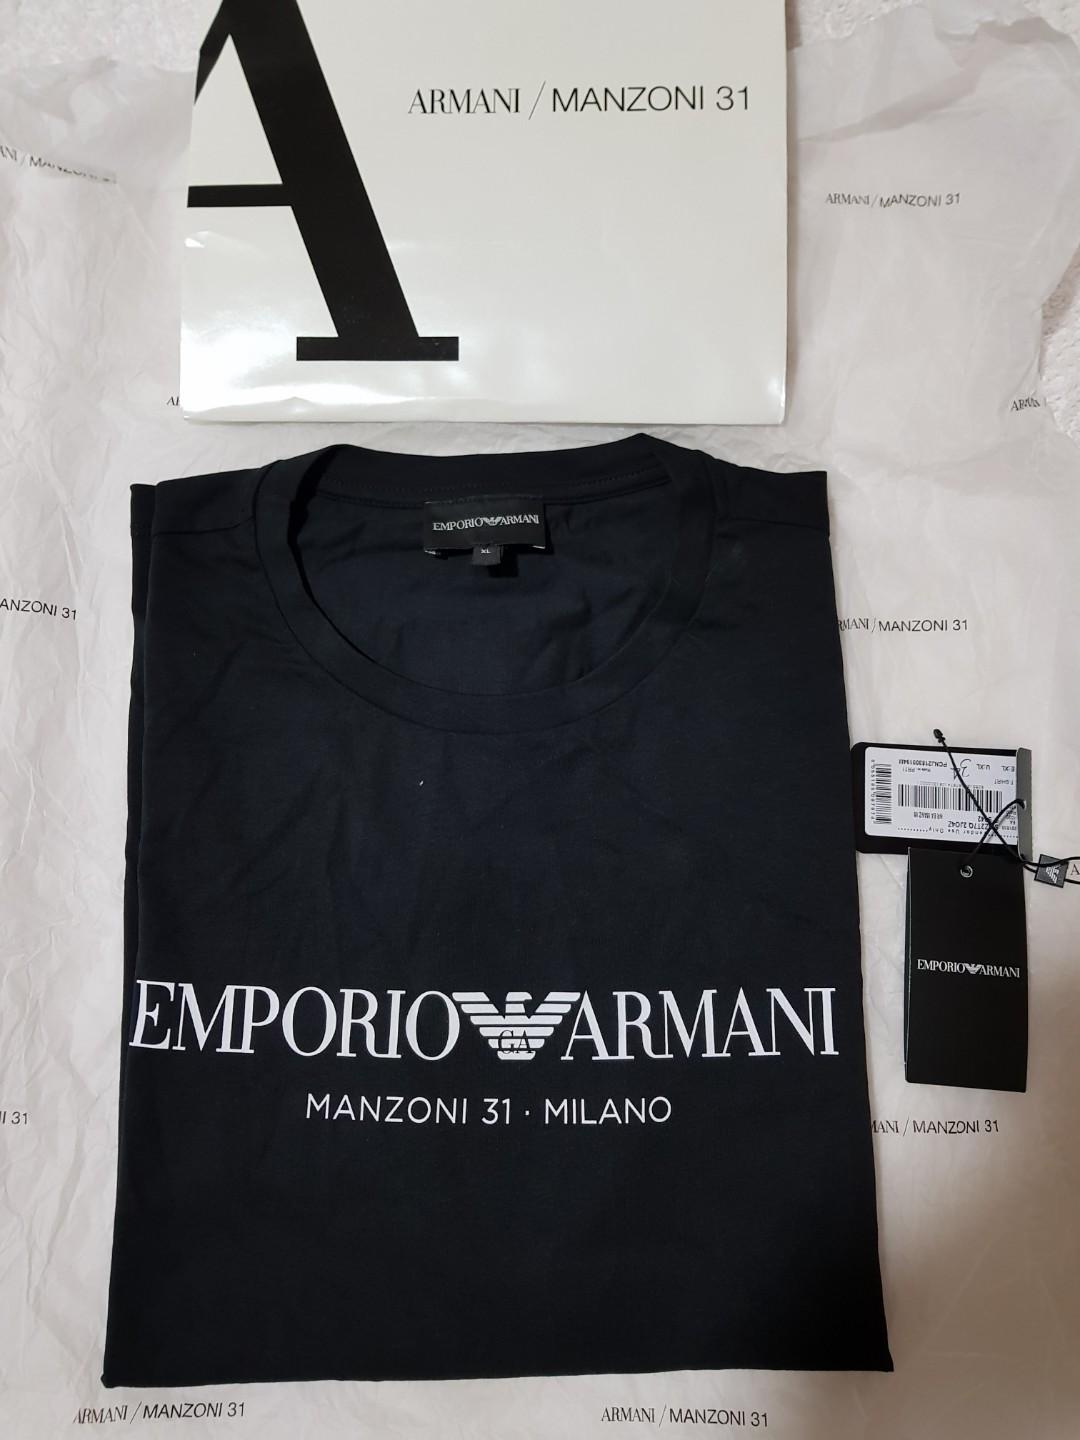 EMPORIO ARMANI Tshirt in Black (MILAN 